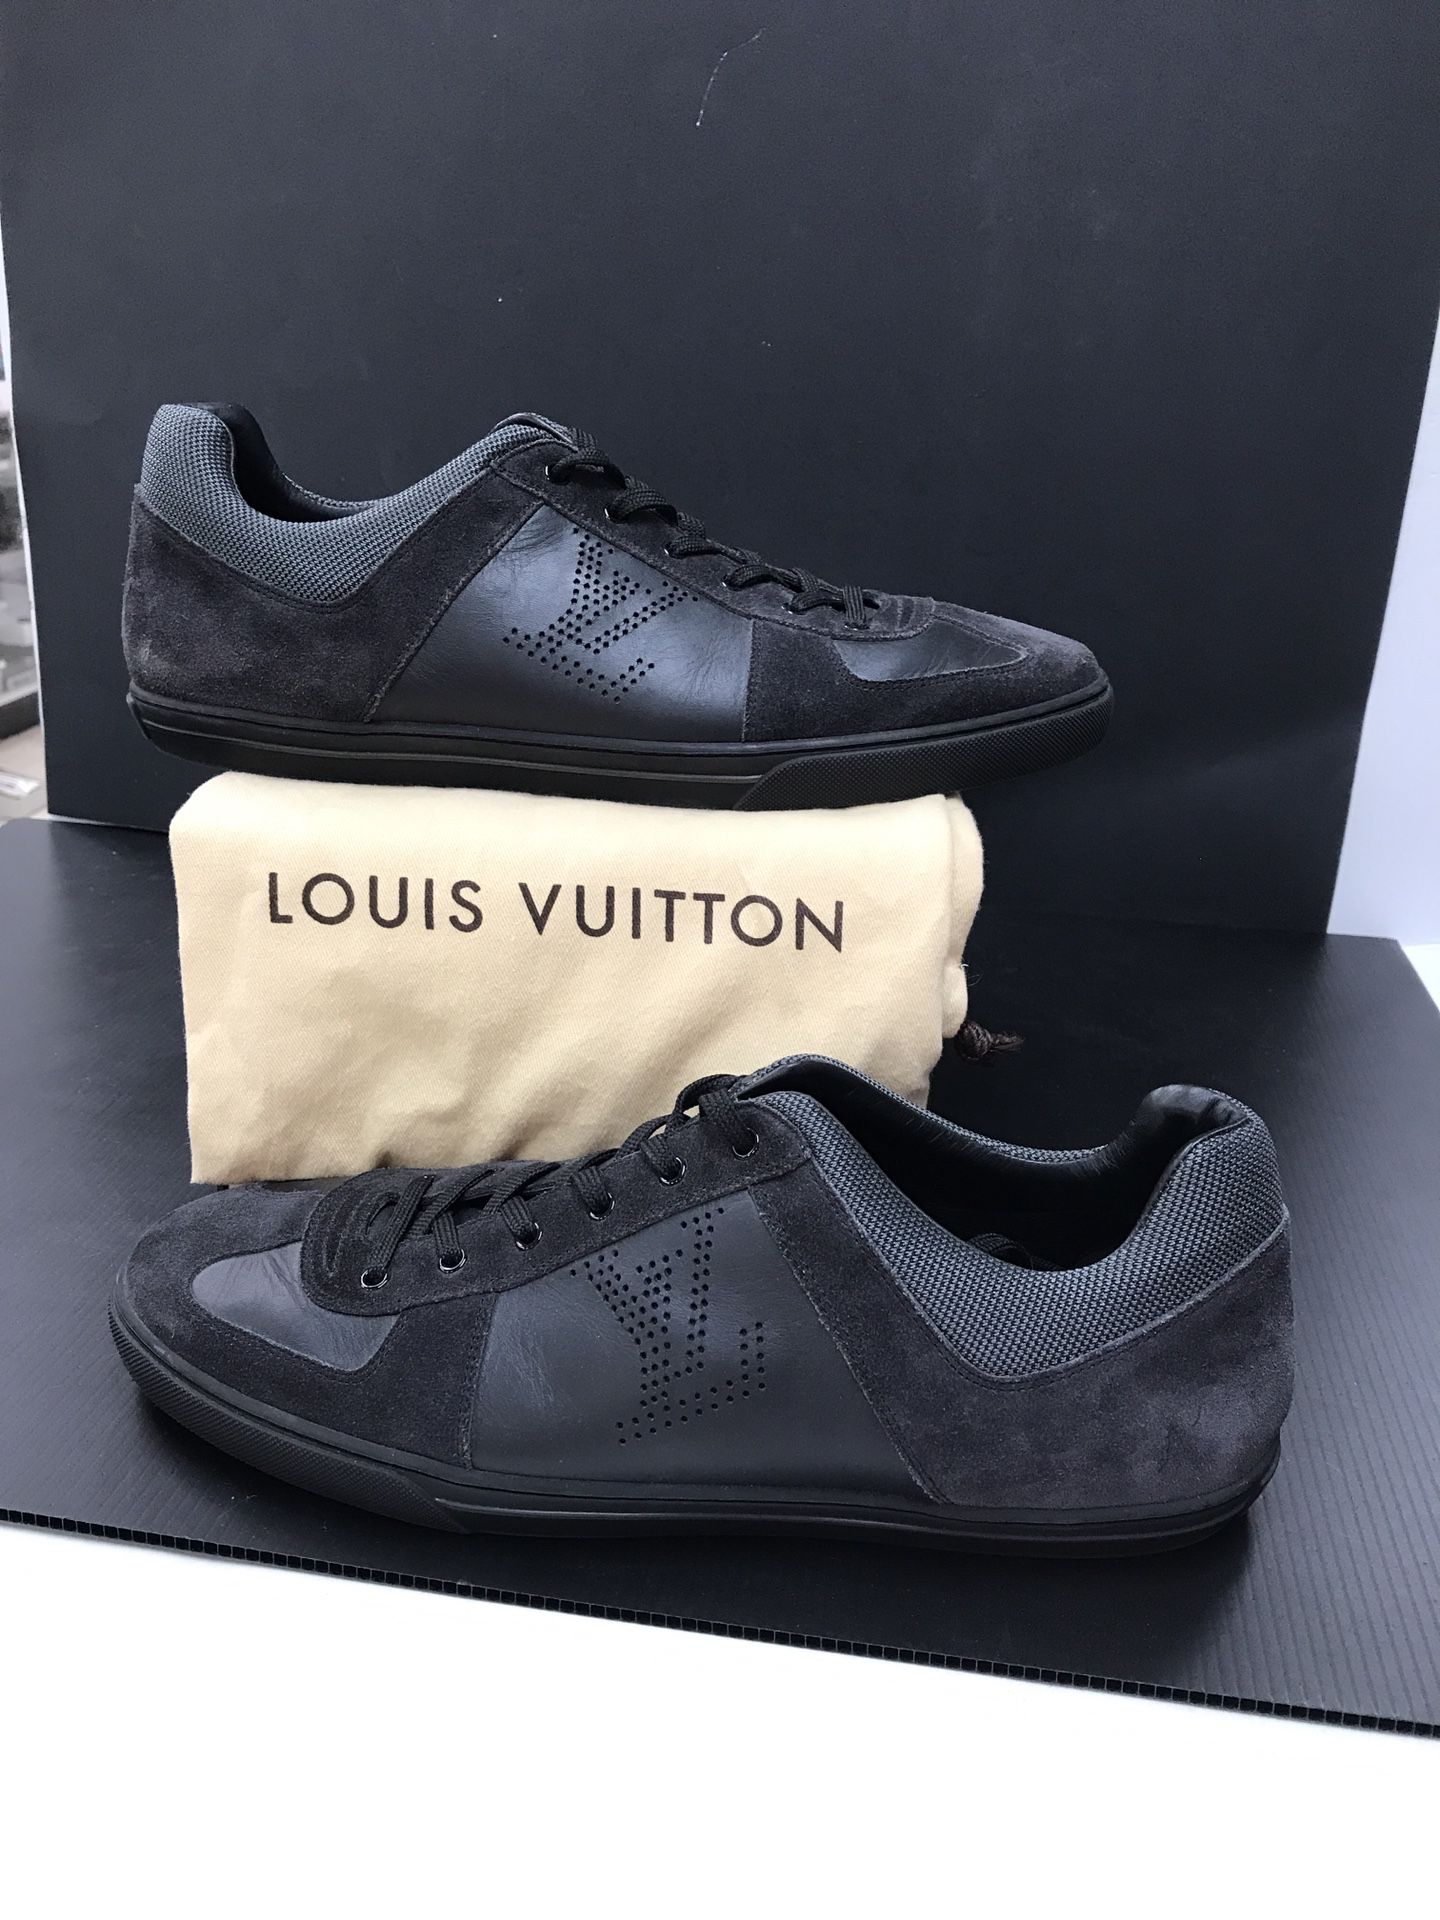 Louis Vuitton Trainers Sky Blue Men’s Sz 11 for Sale in Ocoee, FL - OfferUp